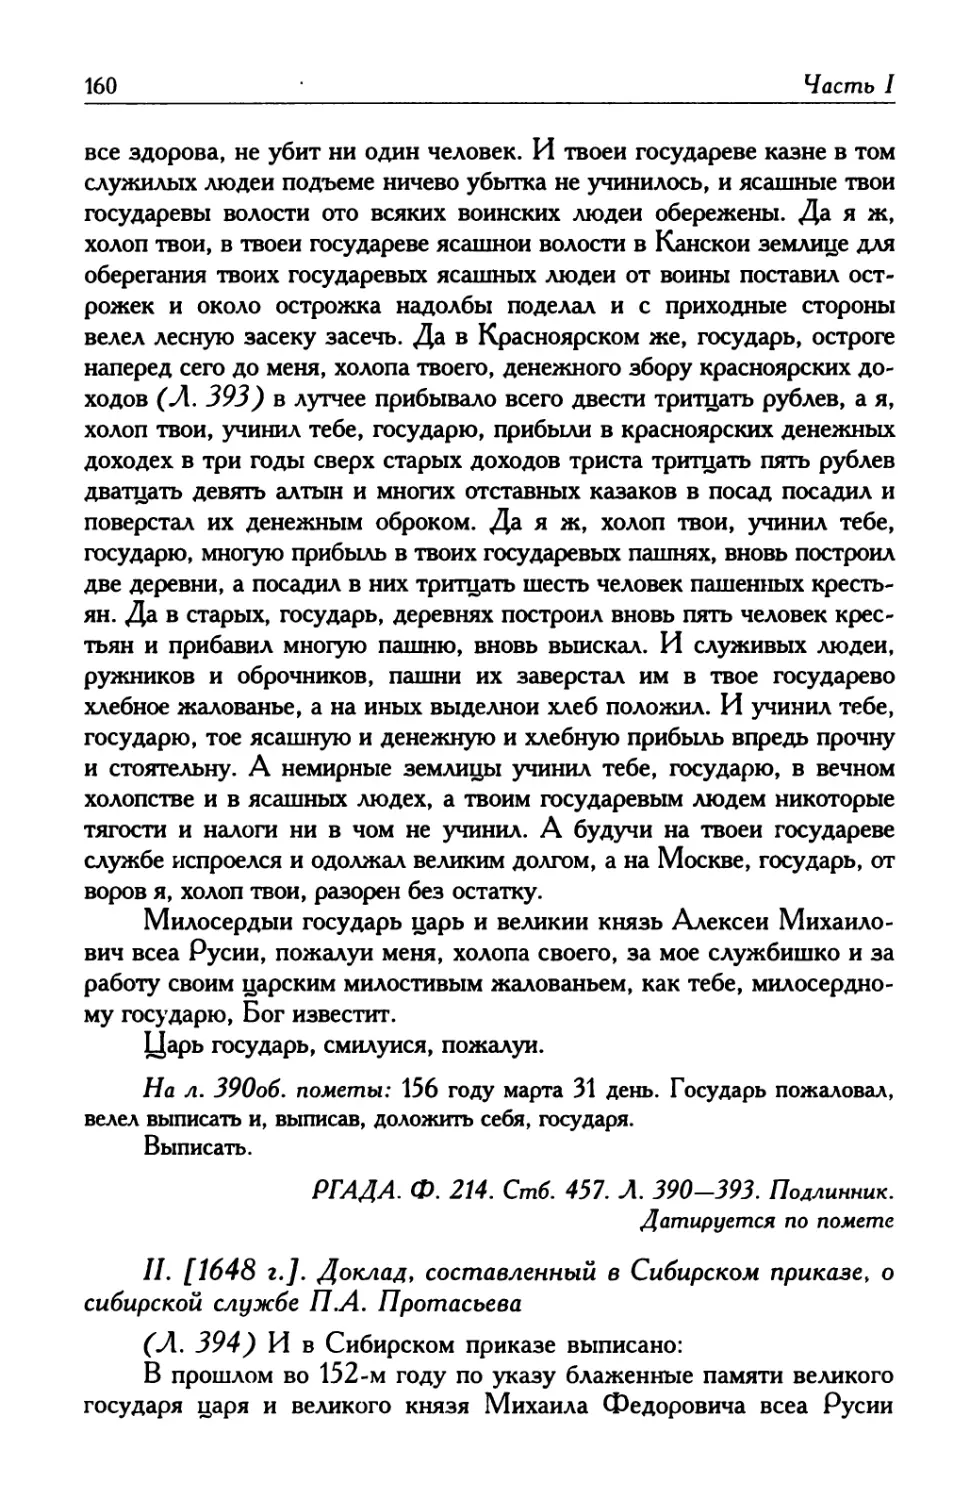 II. [1648 г.]. Доклад, составленный в Сибирском приказе, о сибирской службе П. А. Протасьева